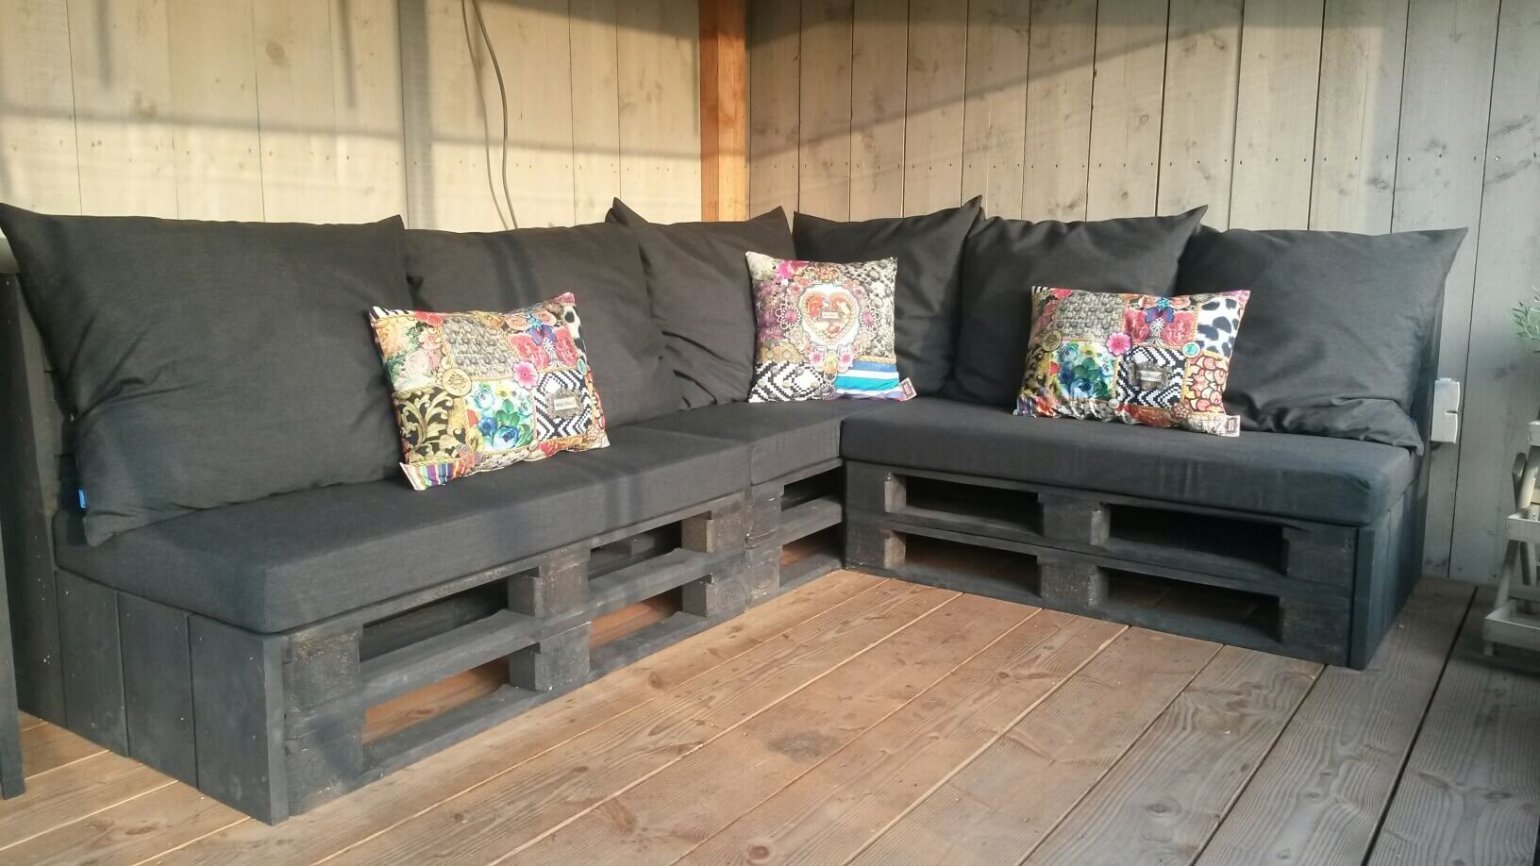 mythologie Het begin Dosering DIY: je eigen loungebank van houten pallets - Homeandgarden.nl